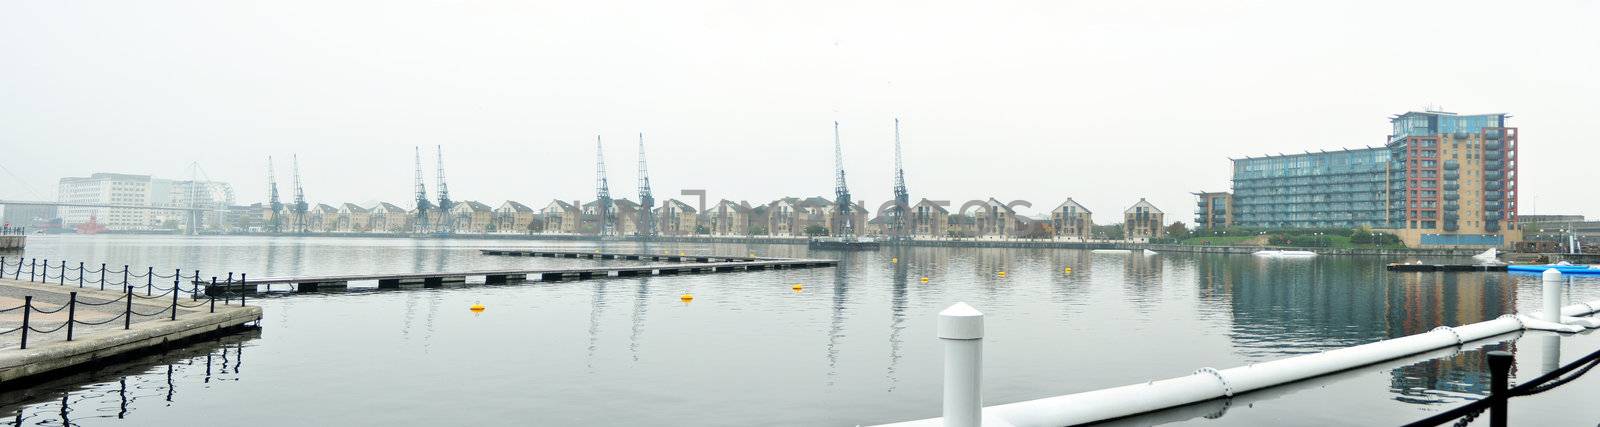 Royal Victoria Dock by tony4urban